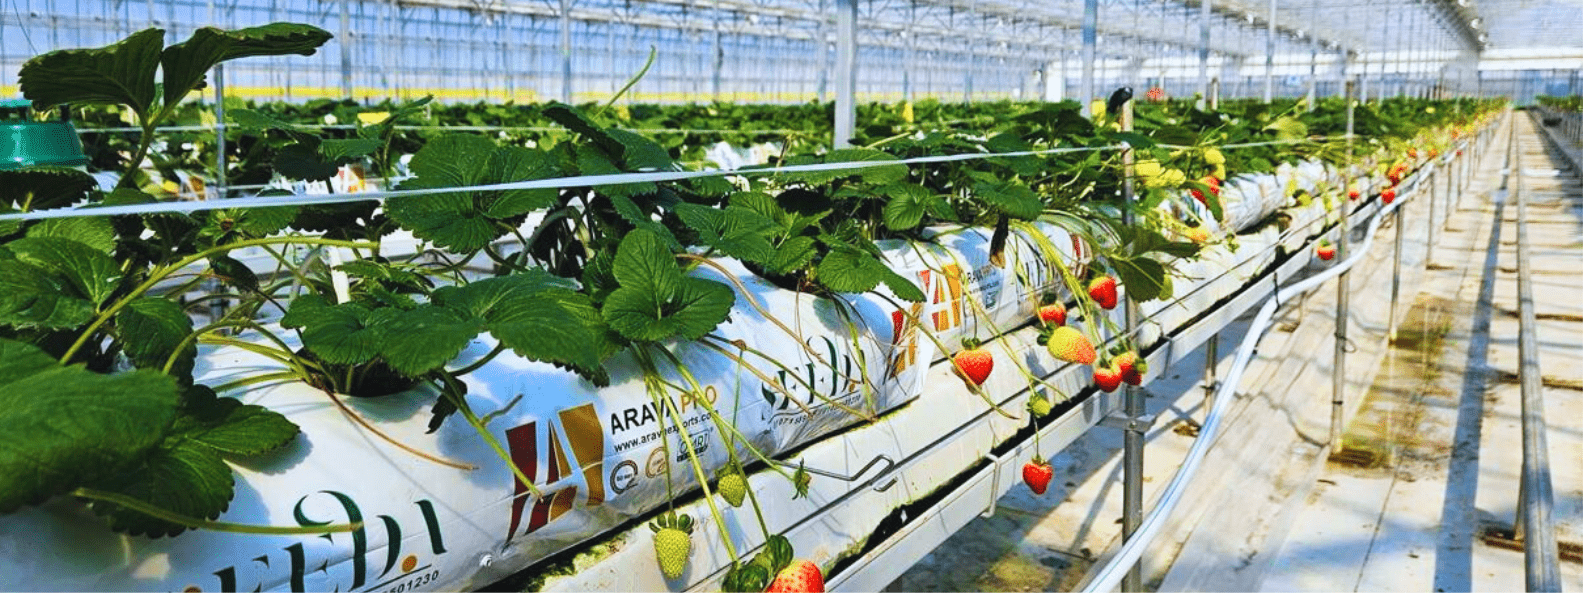 Tomatoes grown in Arava grow bags